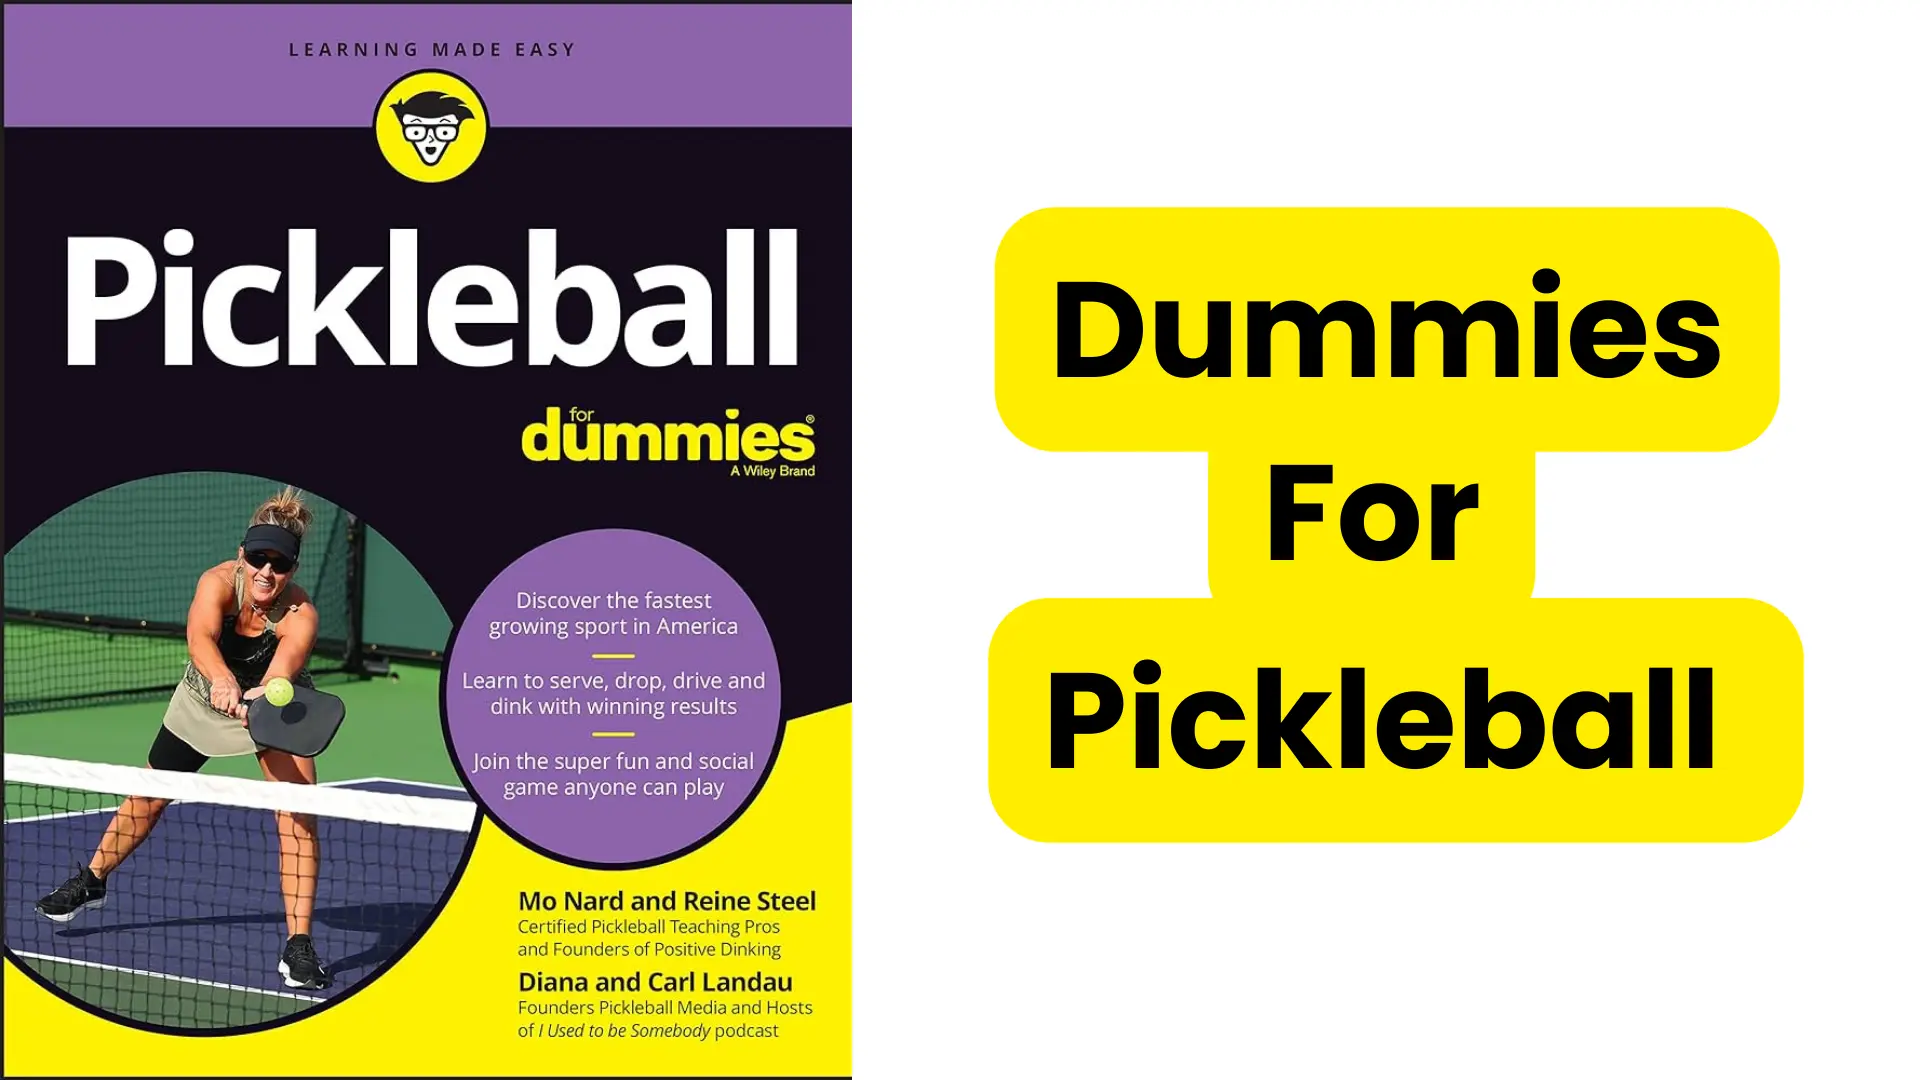 Pickleball for Dummies